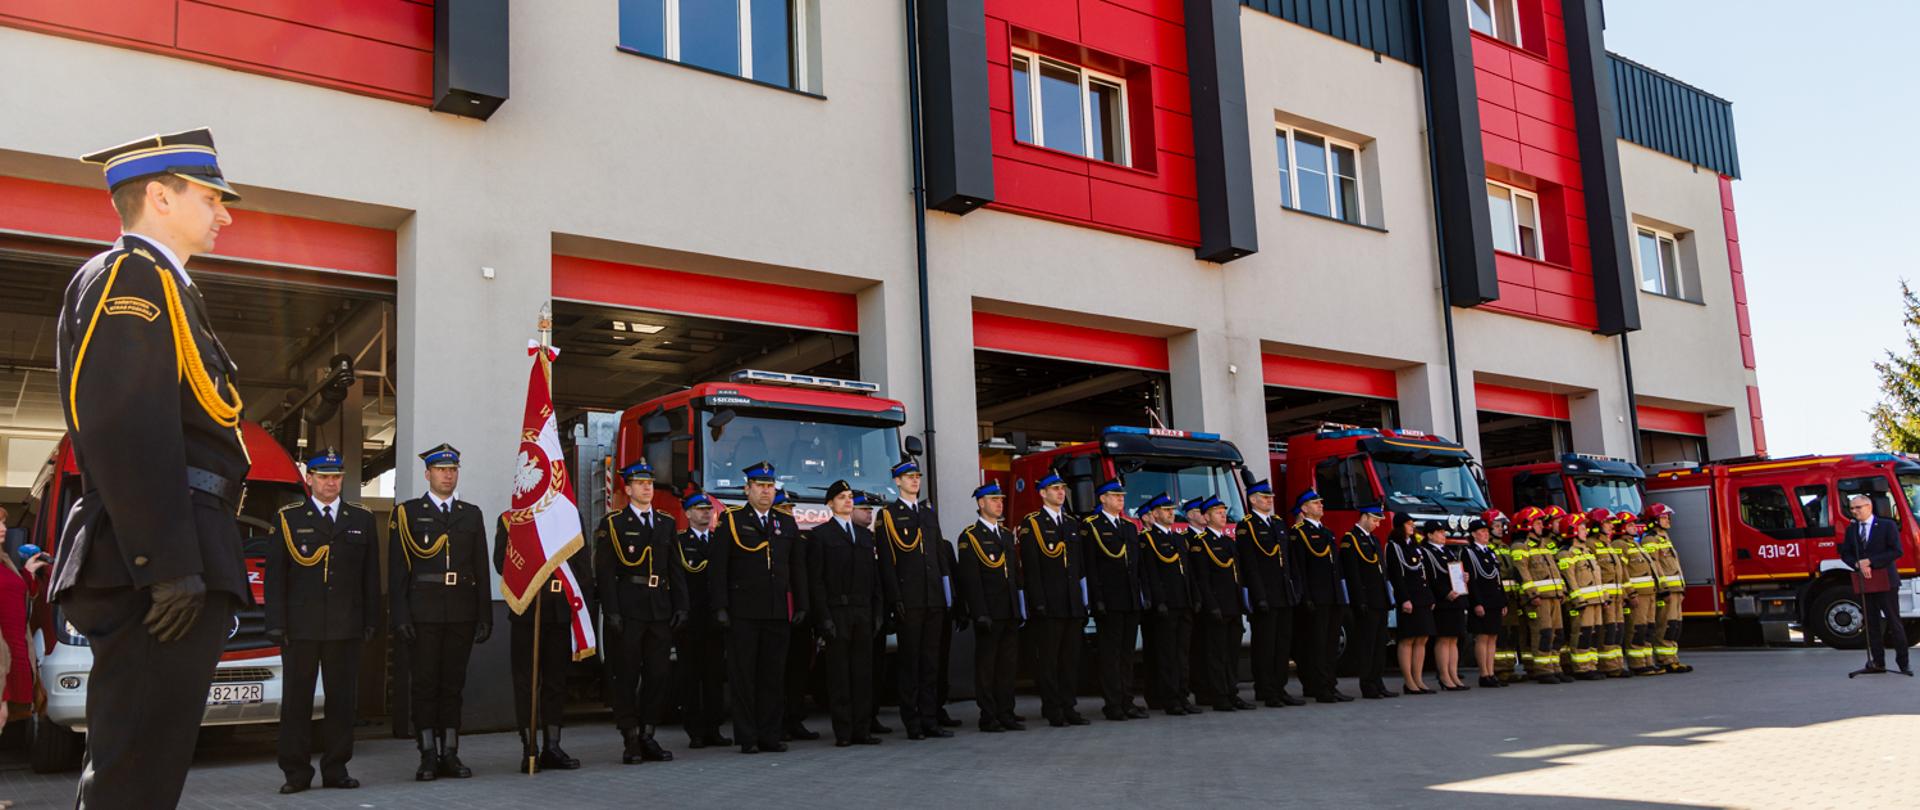 Zdjęcie przedstawia poczet sztandarowy oraz pododdział KP PSP w Ełku składający się ze strażaków w umundurowaniu galowym oraz ubraniach specjalnych.